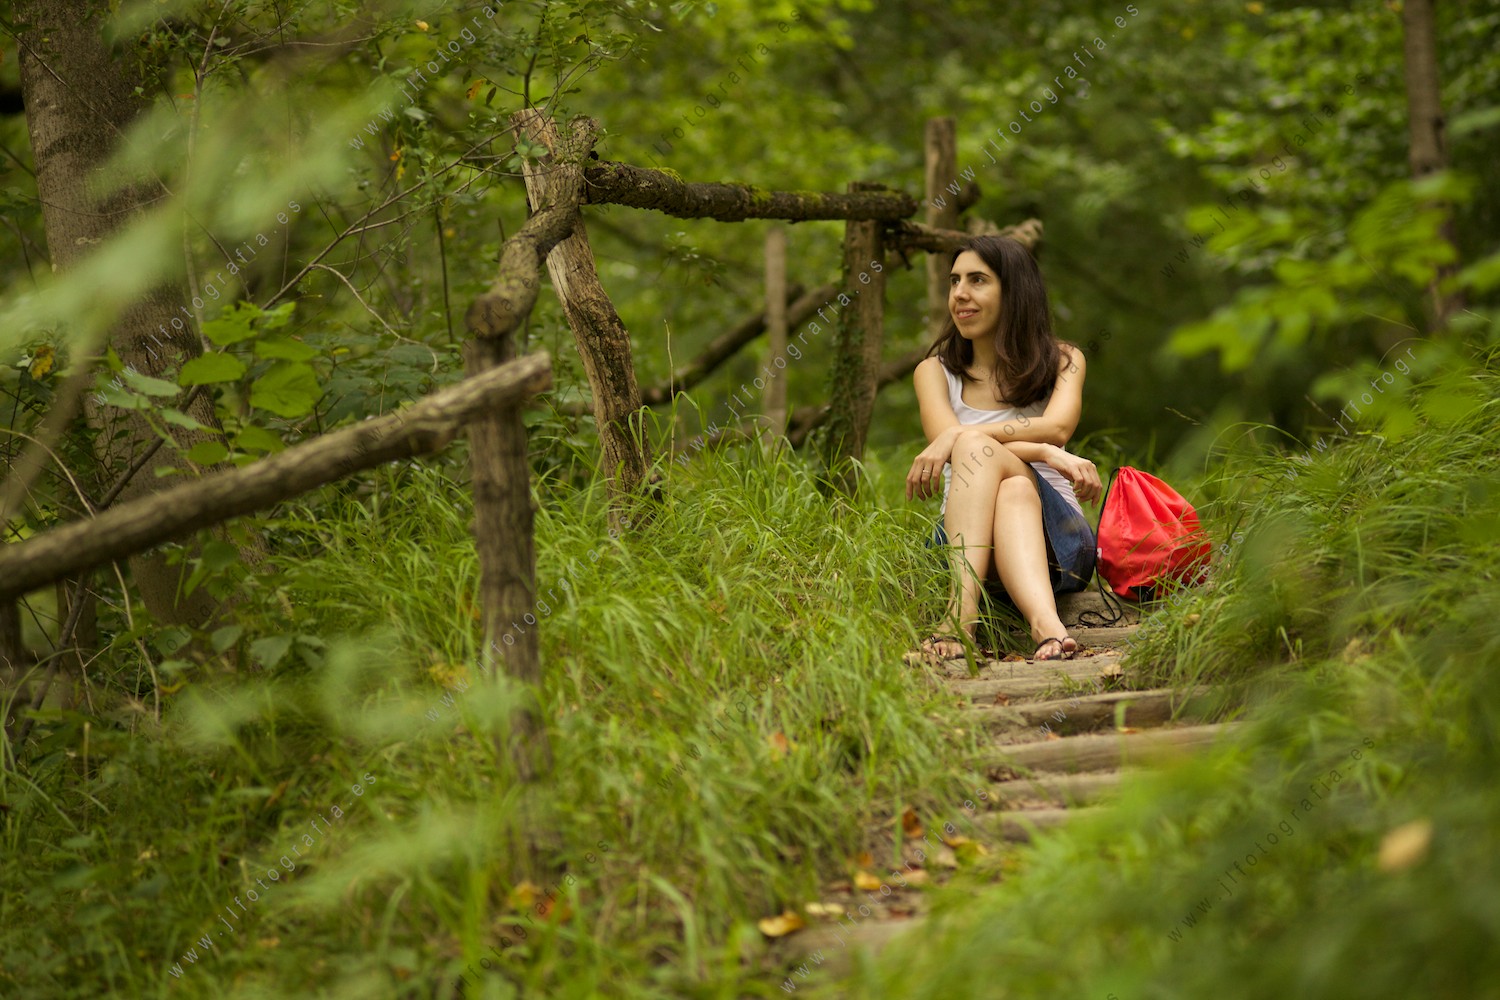 La coordinadora de EQUO Verónica Juzgado en un Retrato en el bosque.